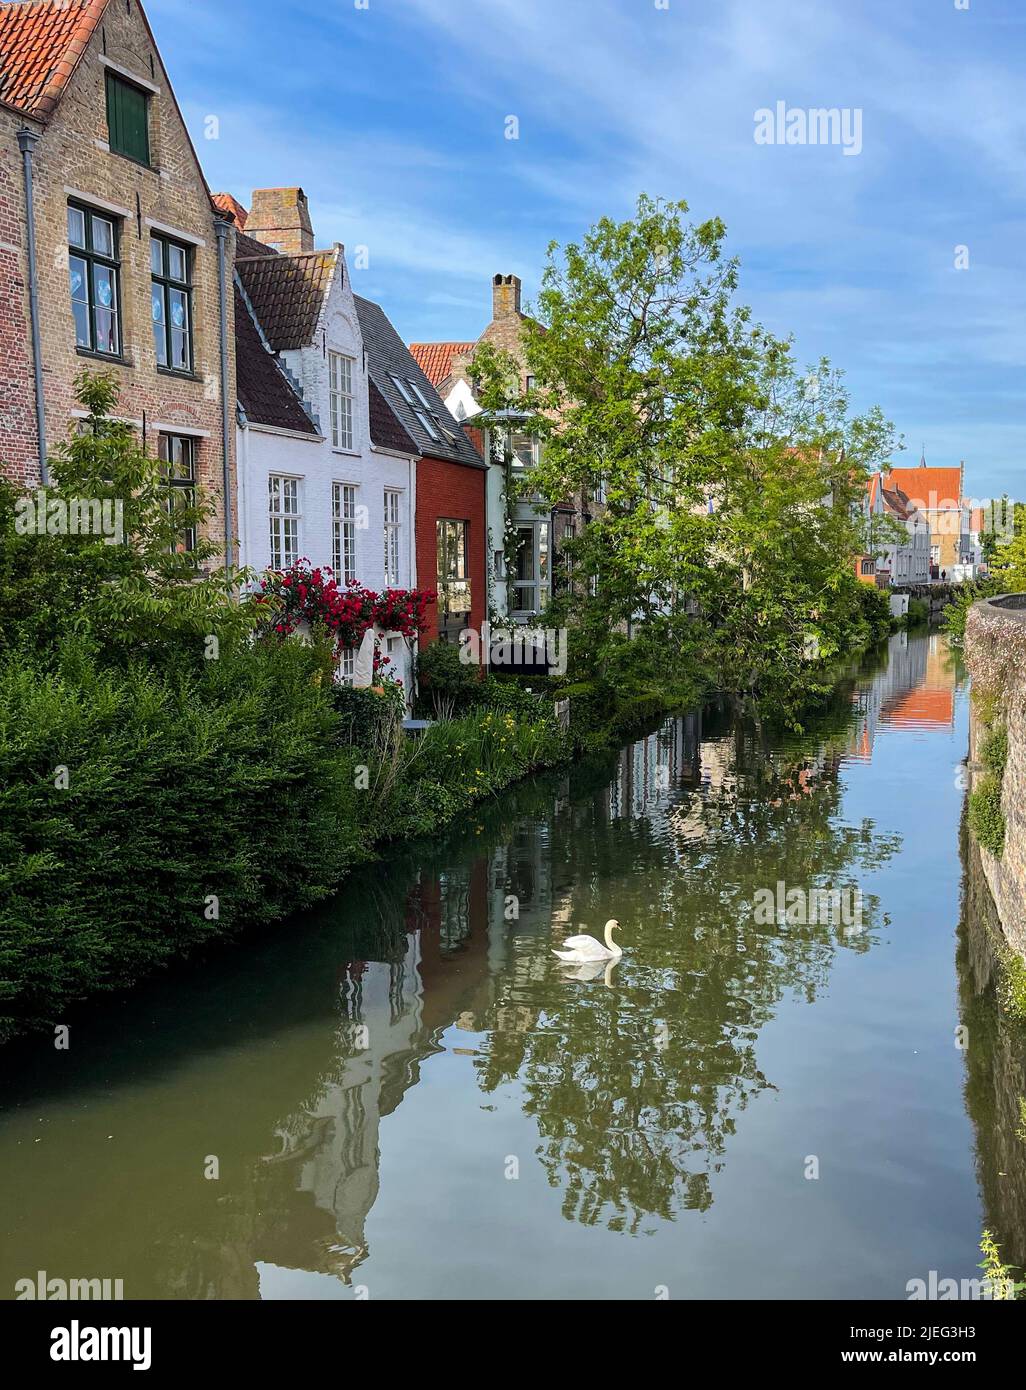 La ciudad de Brujas, una hermosa ciudad medieval en Flandes, Bélgica, famosa por sus canales y su asombrosa arquitectura. Foto de stock